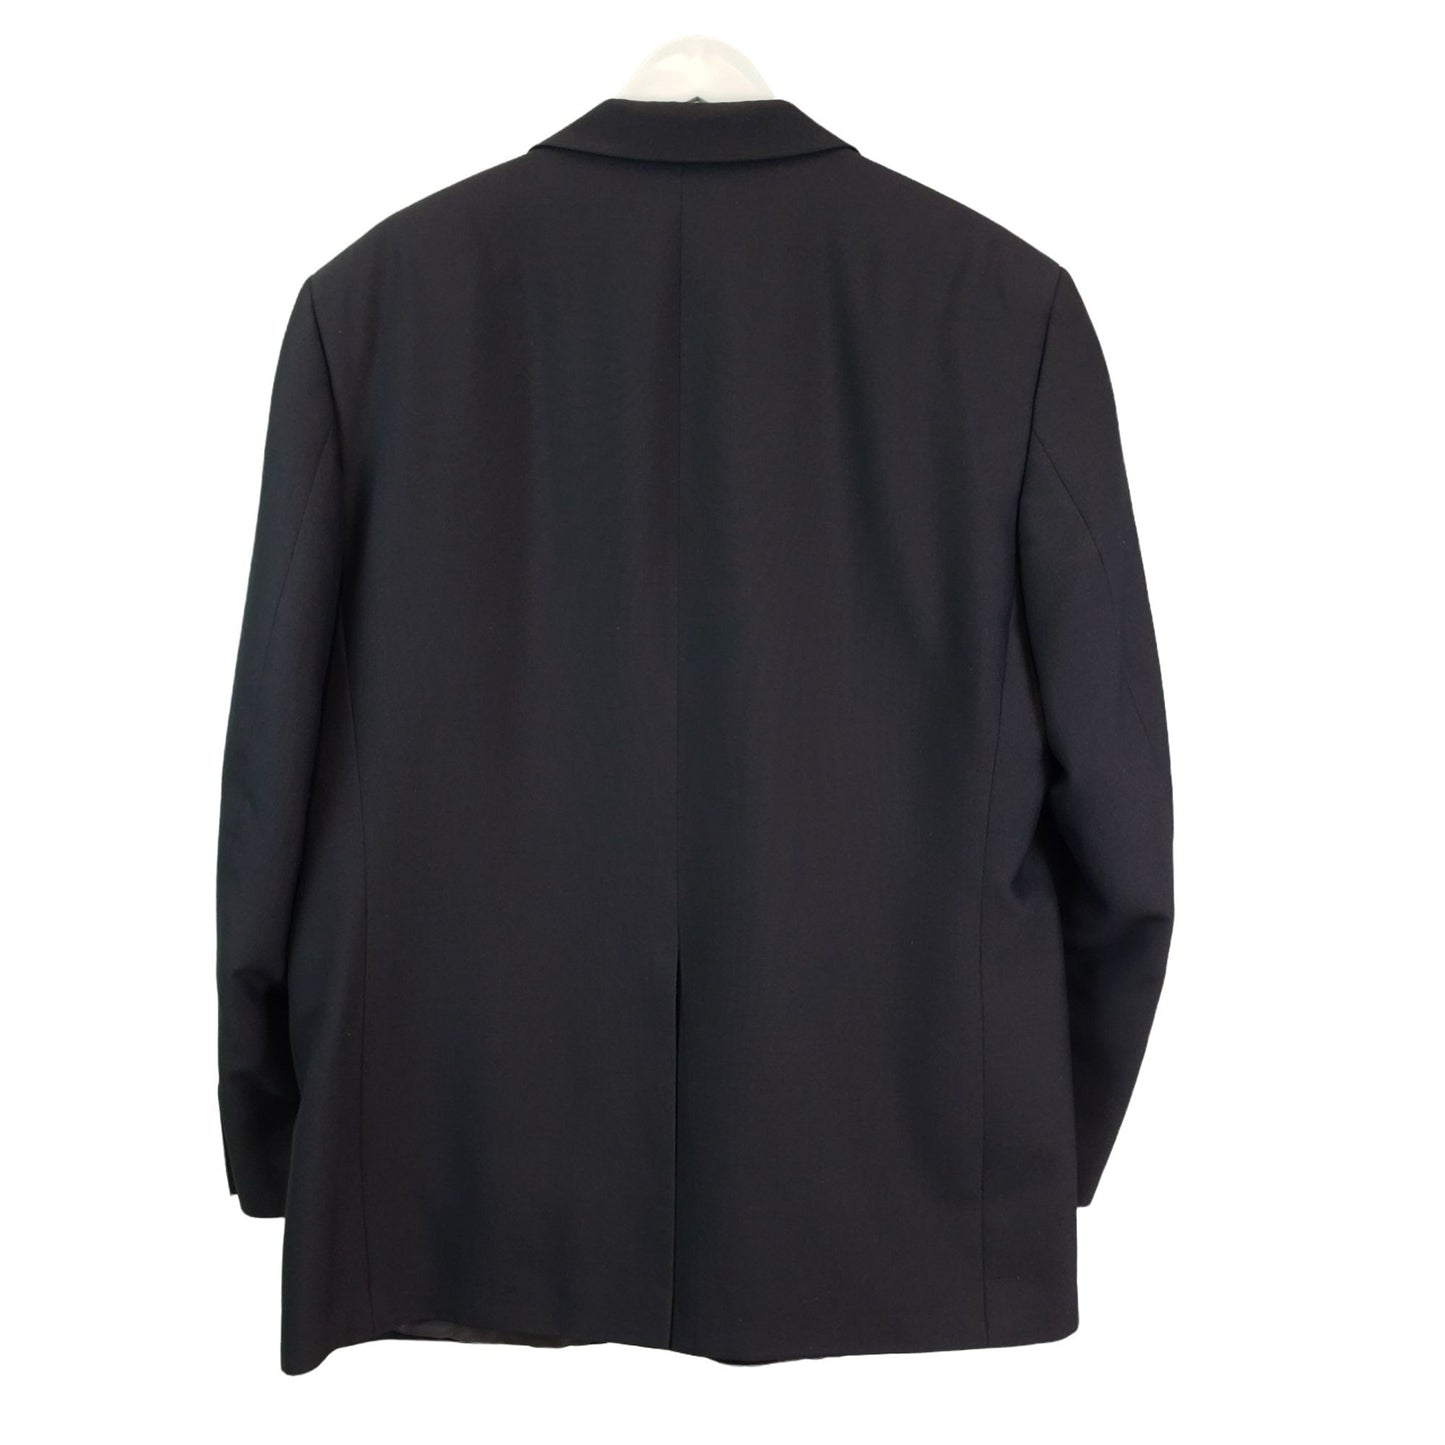 Statements Men's Dark Gray 2 Button Suit Jacket Size 44R